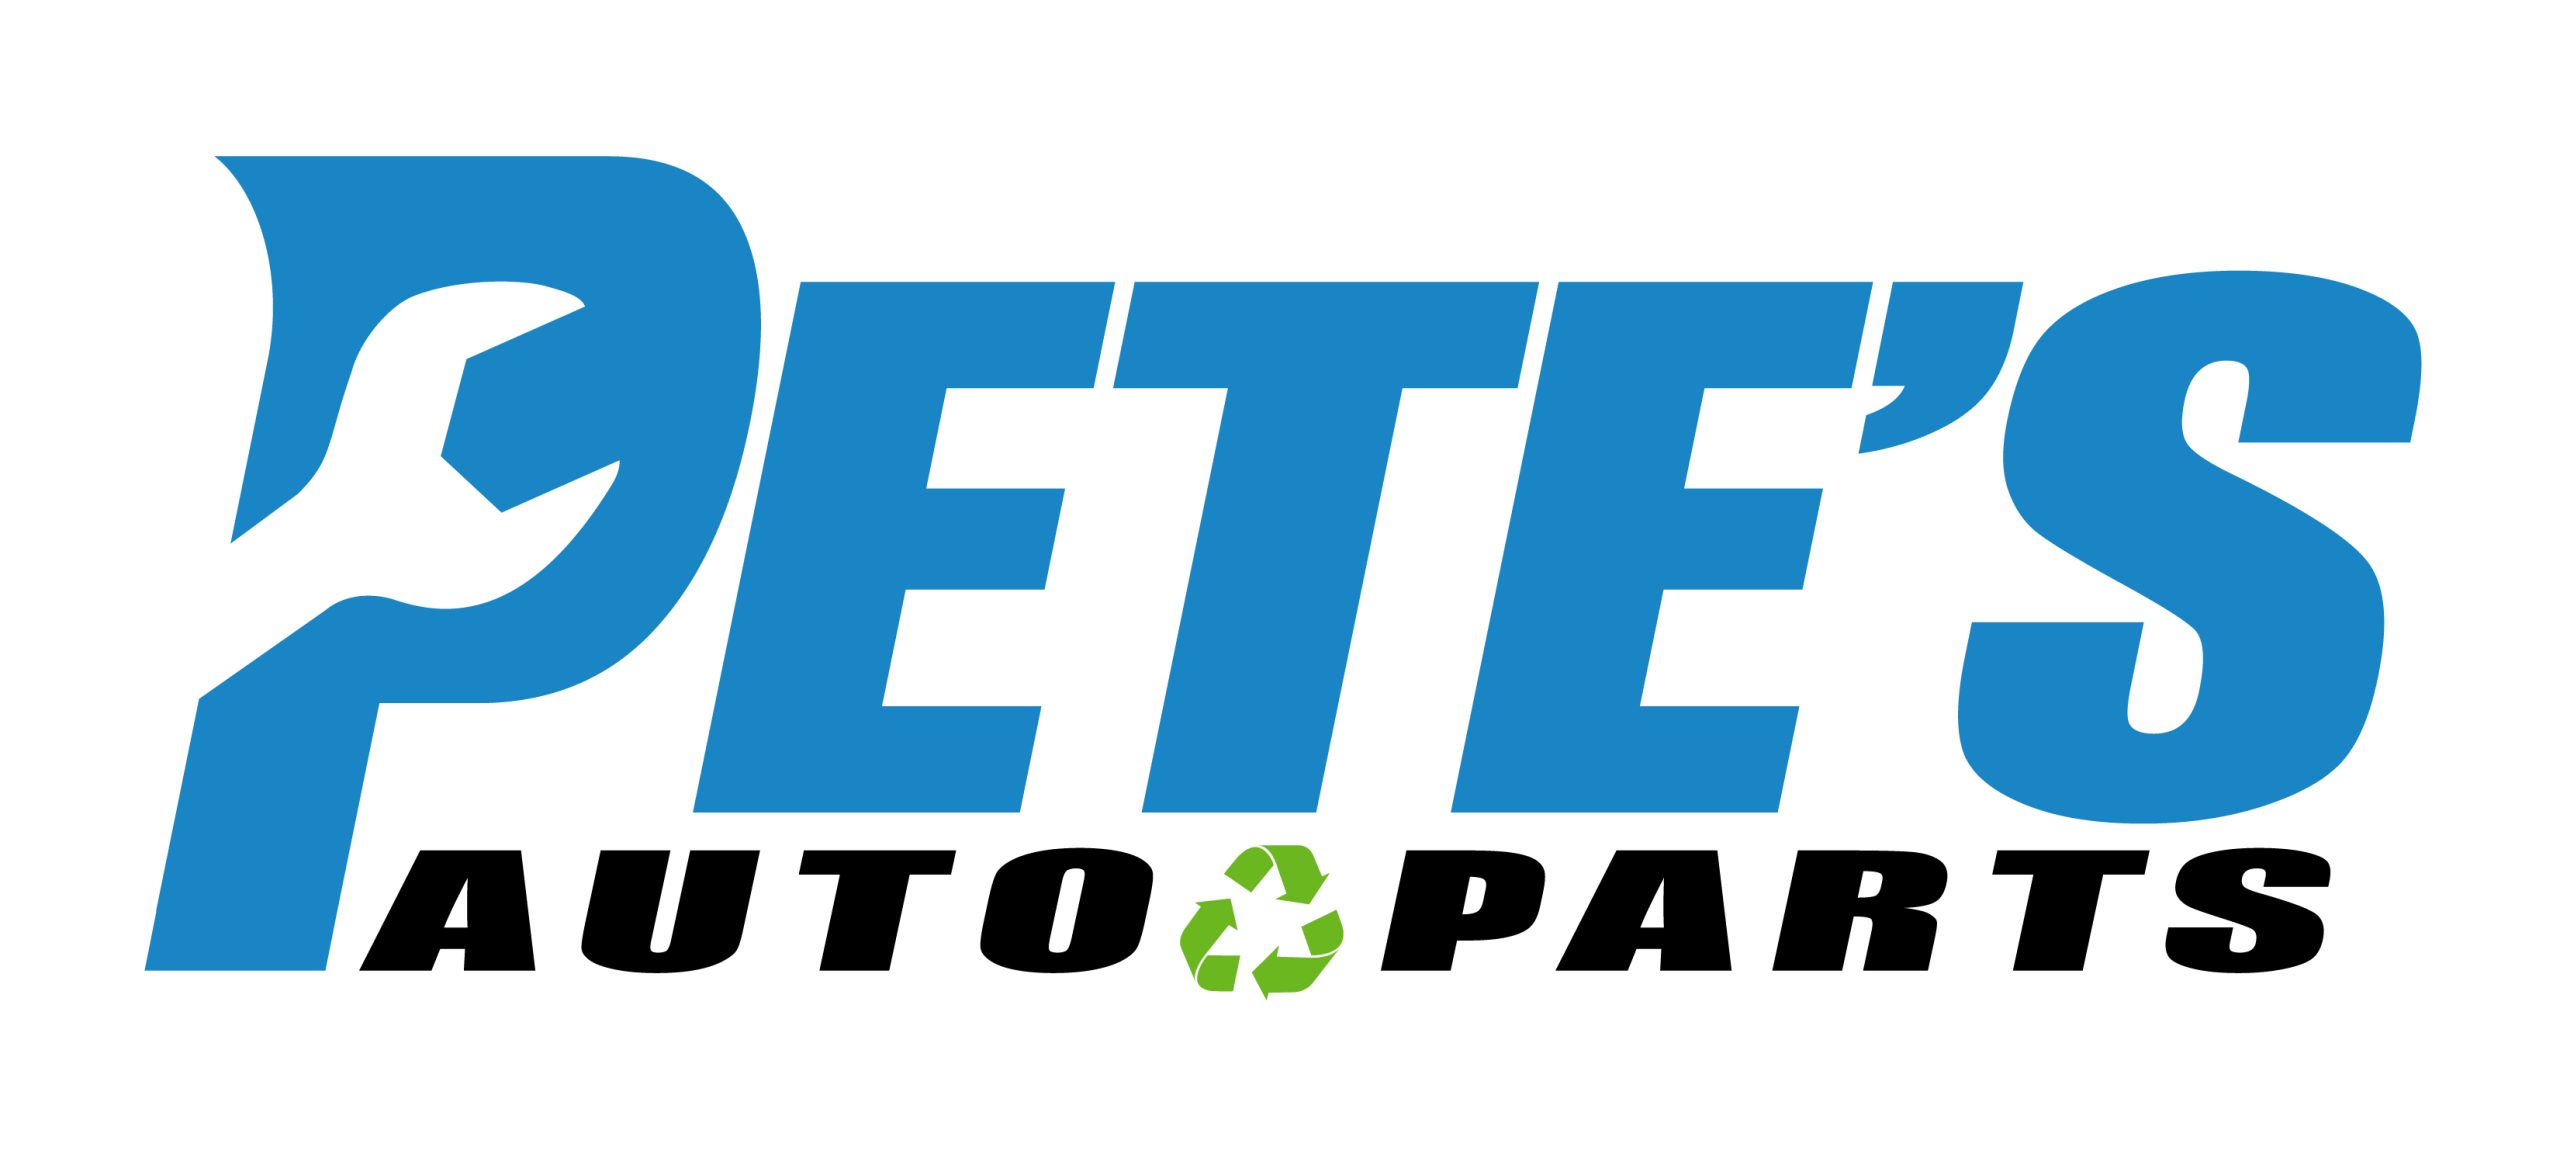 Pete's Auto Parts 